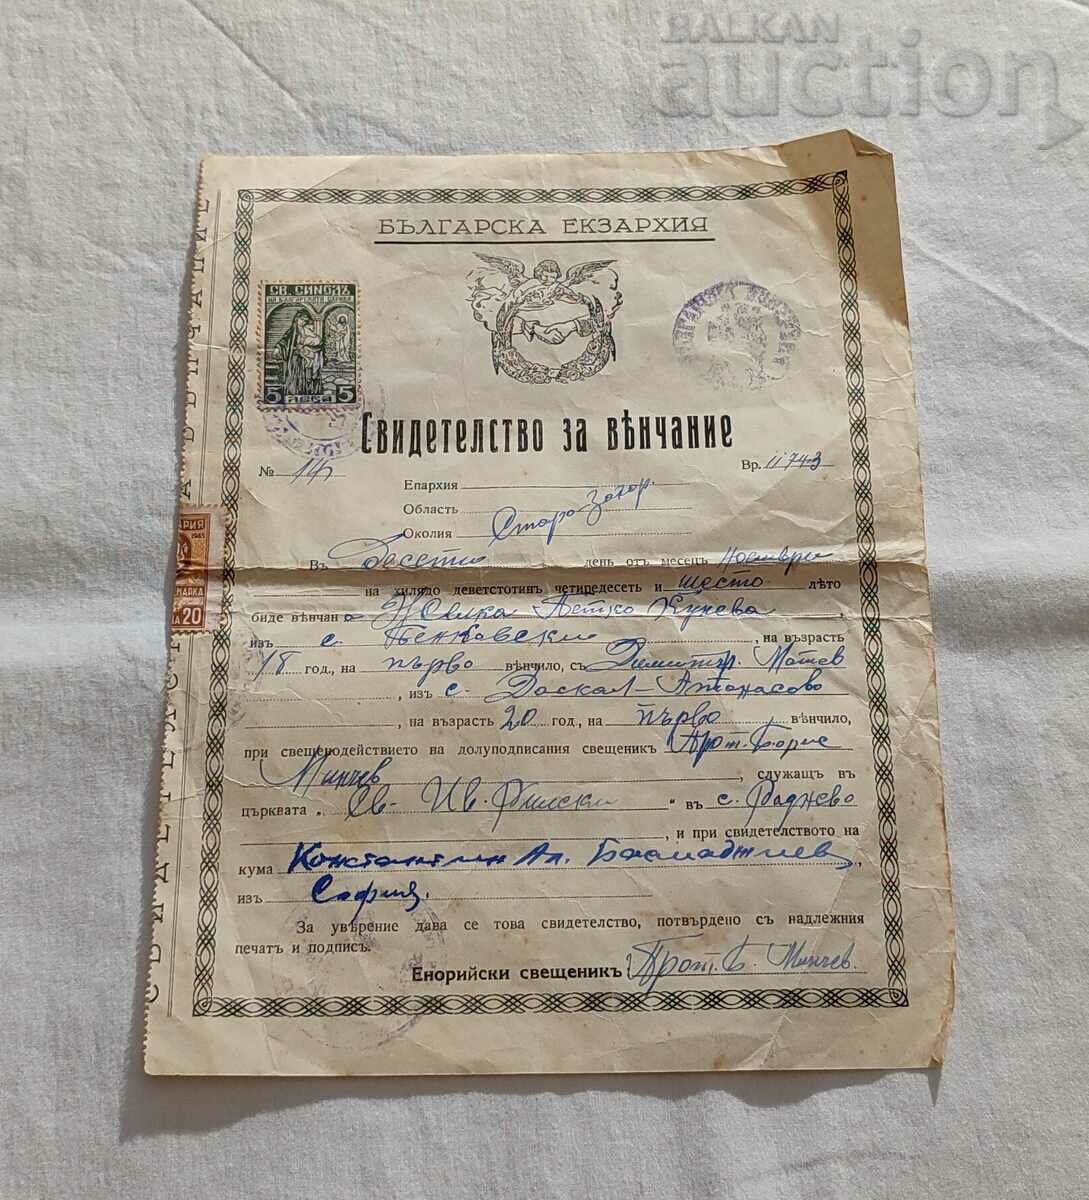 CERTIFICAT DE CĂSĂTORIE VI.RADNEVO BULGARIA EXARHIA 1946 Nr.14